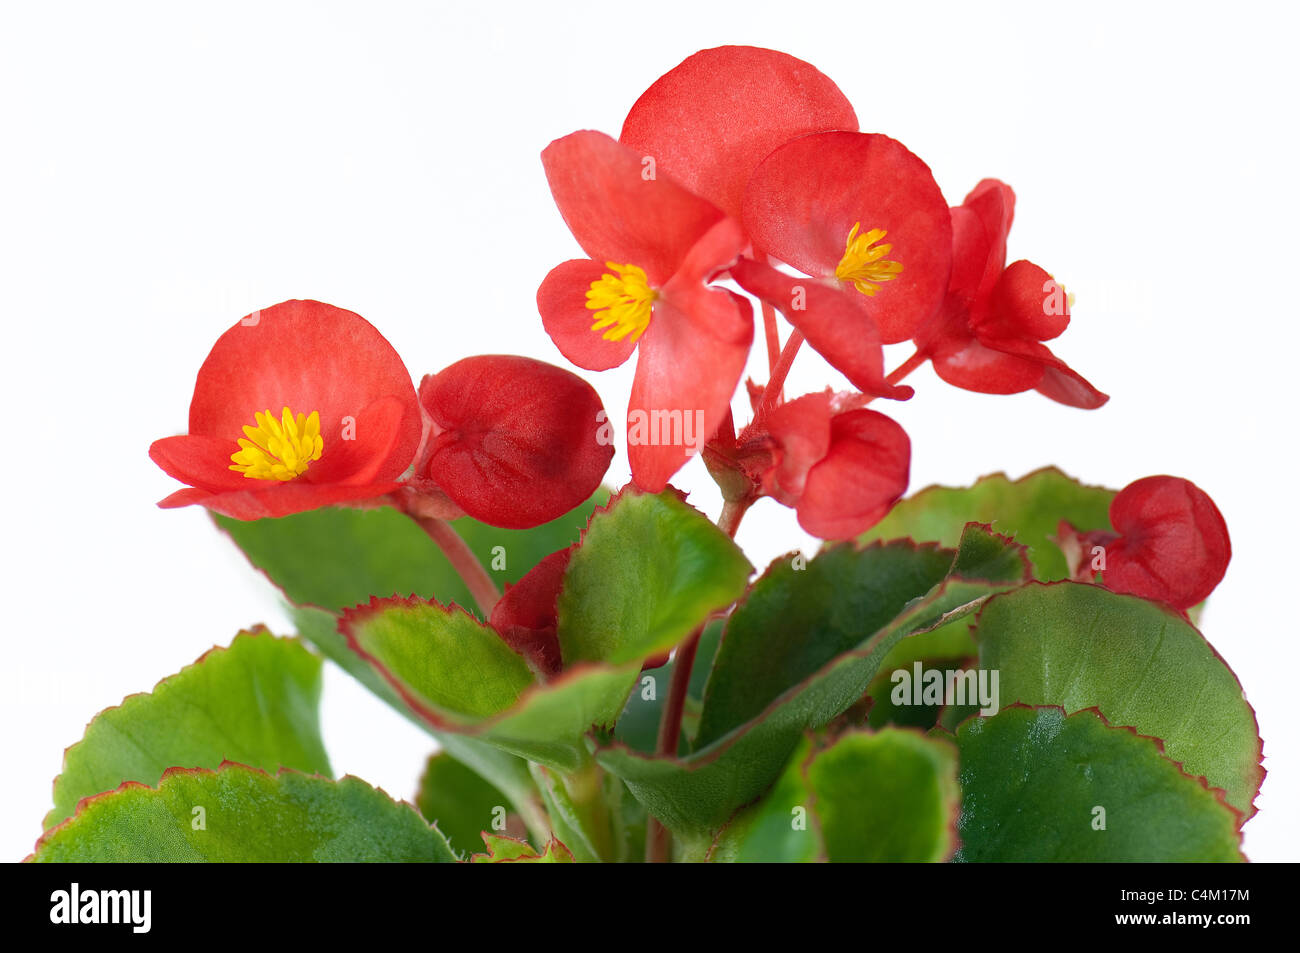 Begonia Wachs, Wachs-Blatt-Begonie (Begonia x Semperfloren-Cultorum), rot blühende Pflanze. Studio Bild vor einem weißen Hintergrund Stockfoto